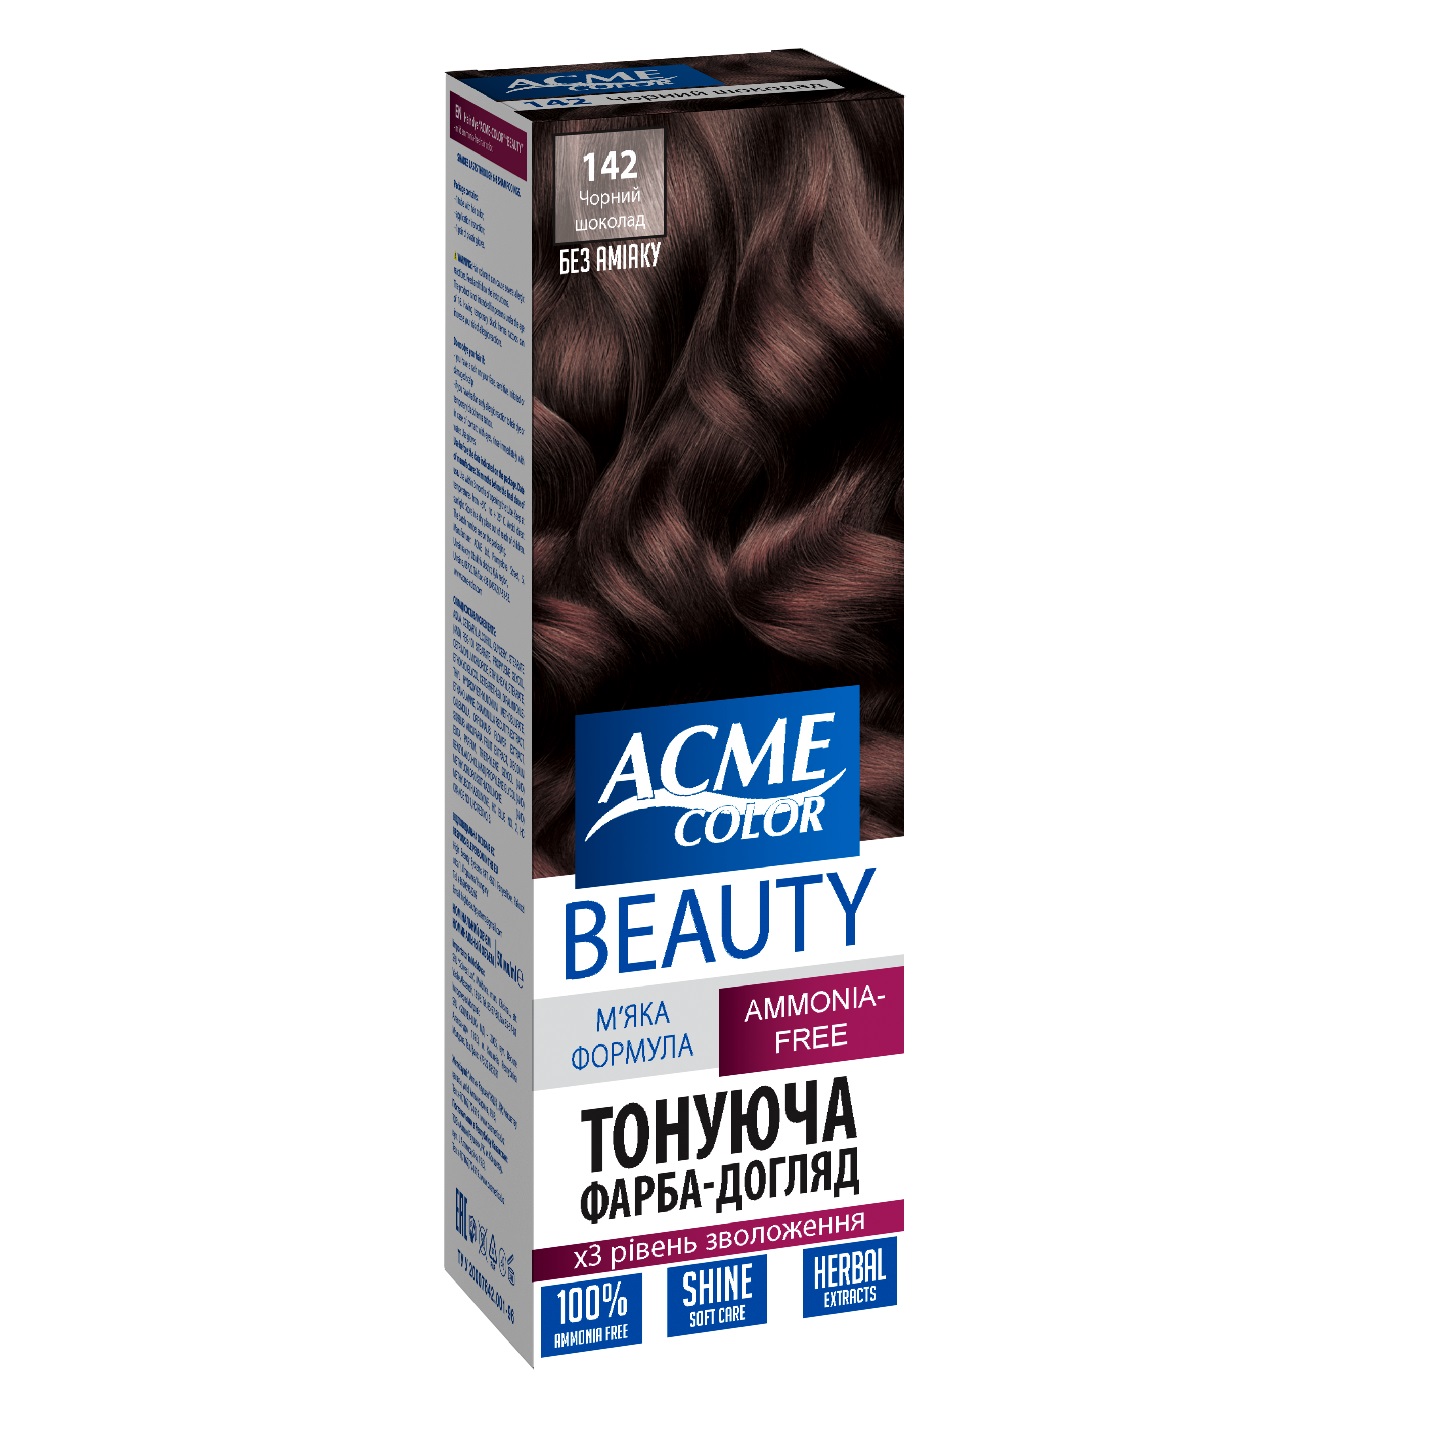 Гель-фарба для волосся Acme-color Beauty, відтінок 142 (Чорний шоколад), 69 г - фото 1